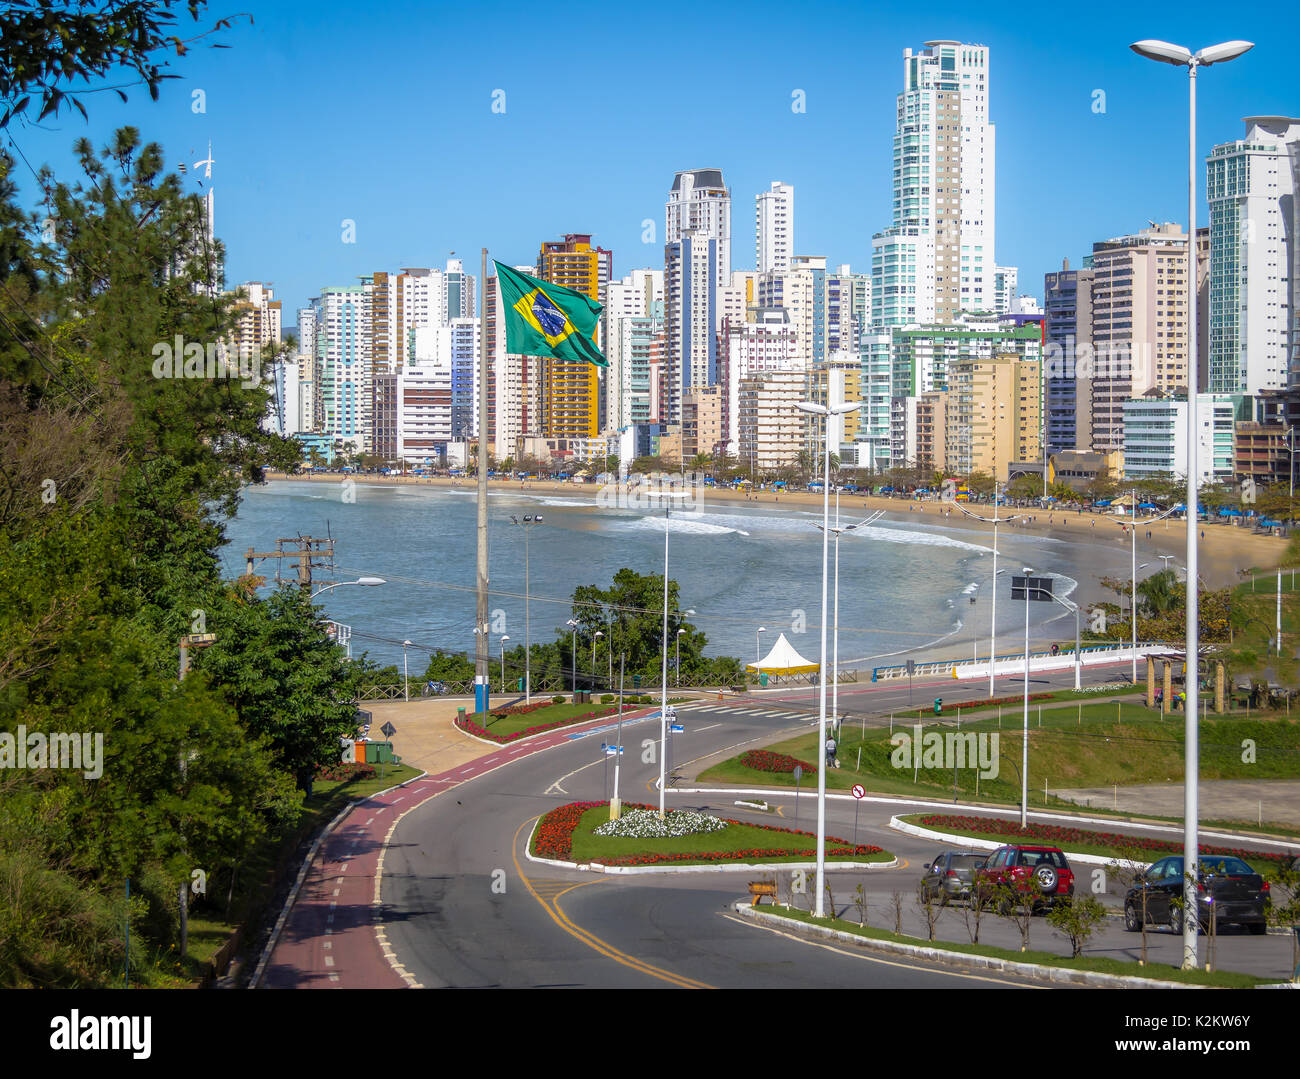 Ciudad Balneario Camboriu y bandera brasileña - Balneario Camboriu, Santa Catarina, Brasil Foto de stock